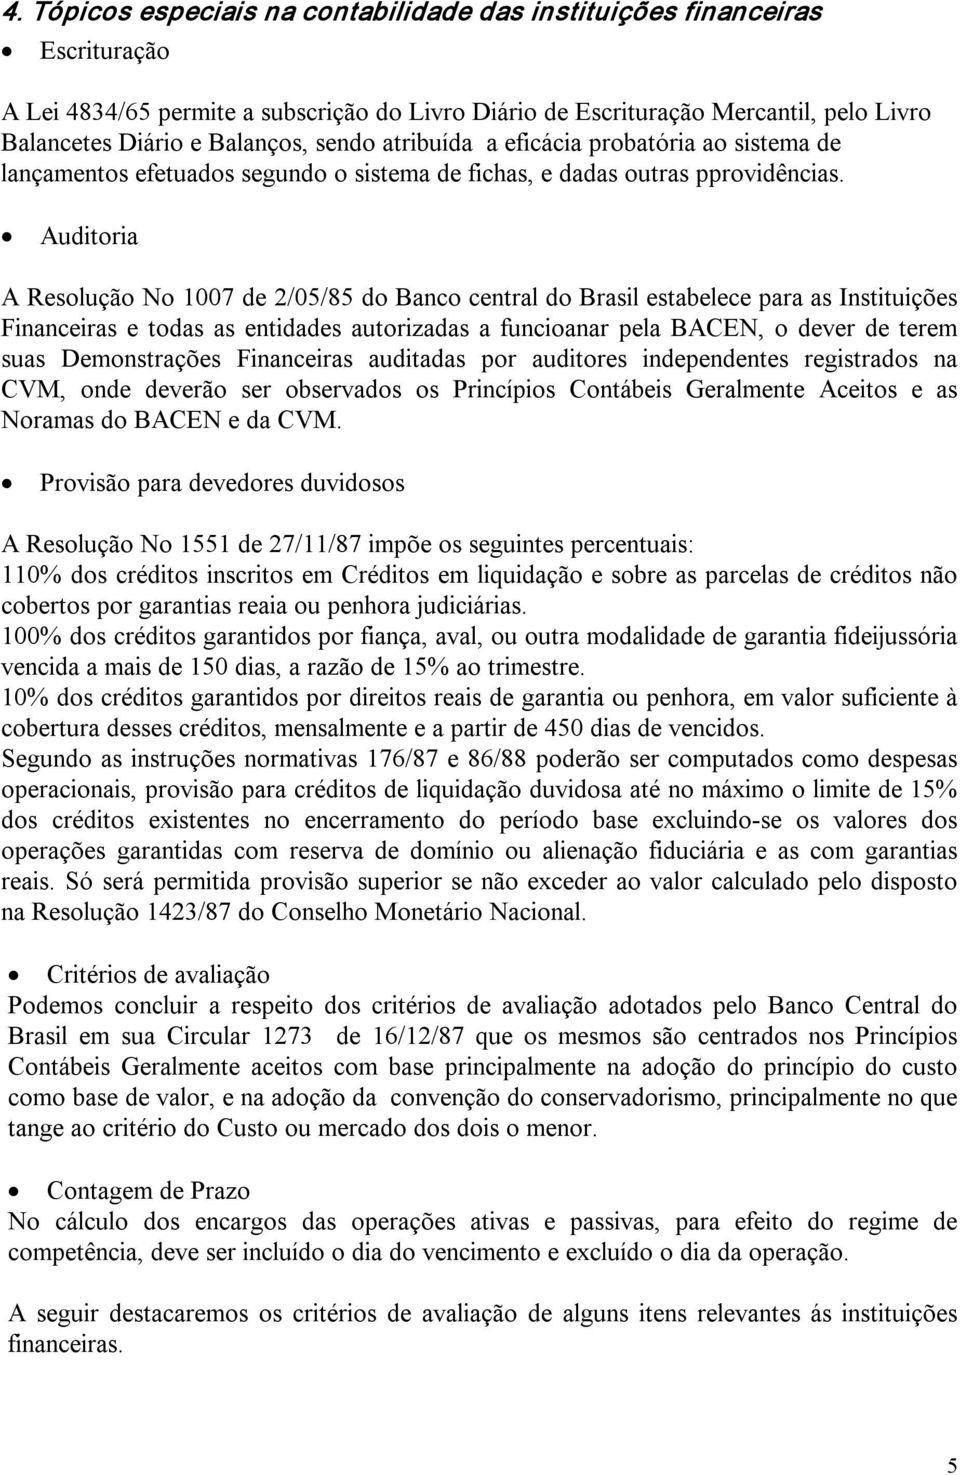 Auditoria A Resolução No 1007 de 2/05/85 do Banco central do Brasil estabelece para as Instituições Financeiras e todas as entidades autorizadas a funcioanar pela BACEN, o dever de terem suas